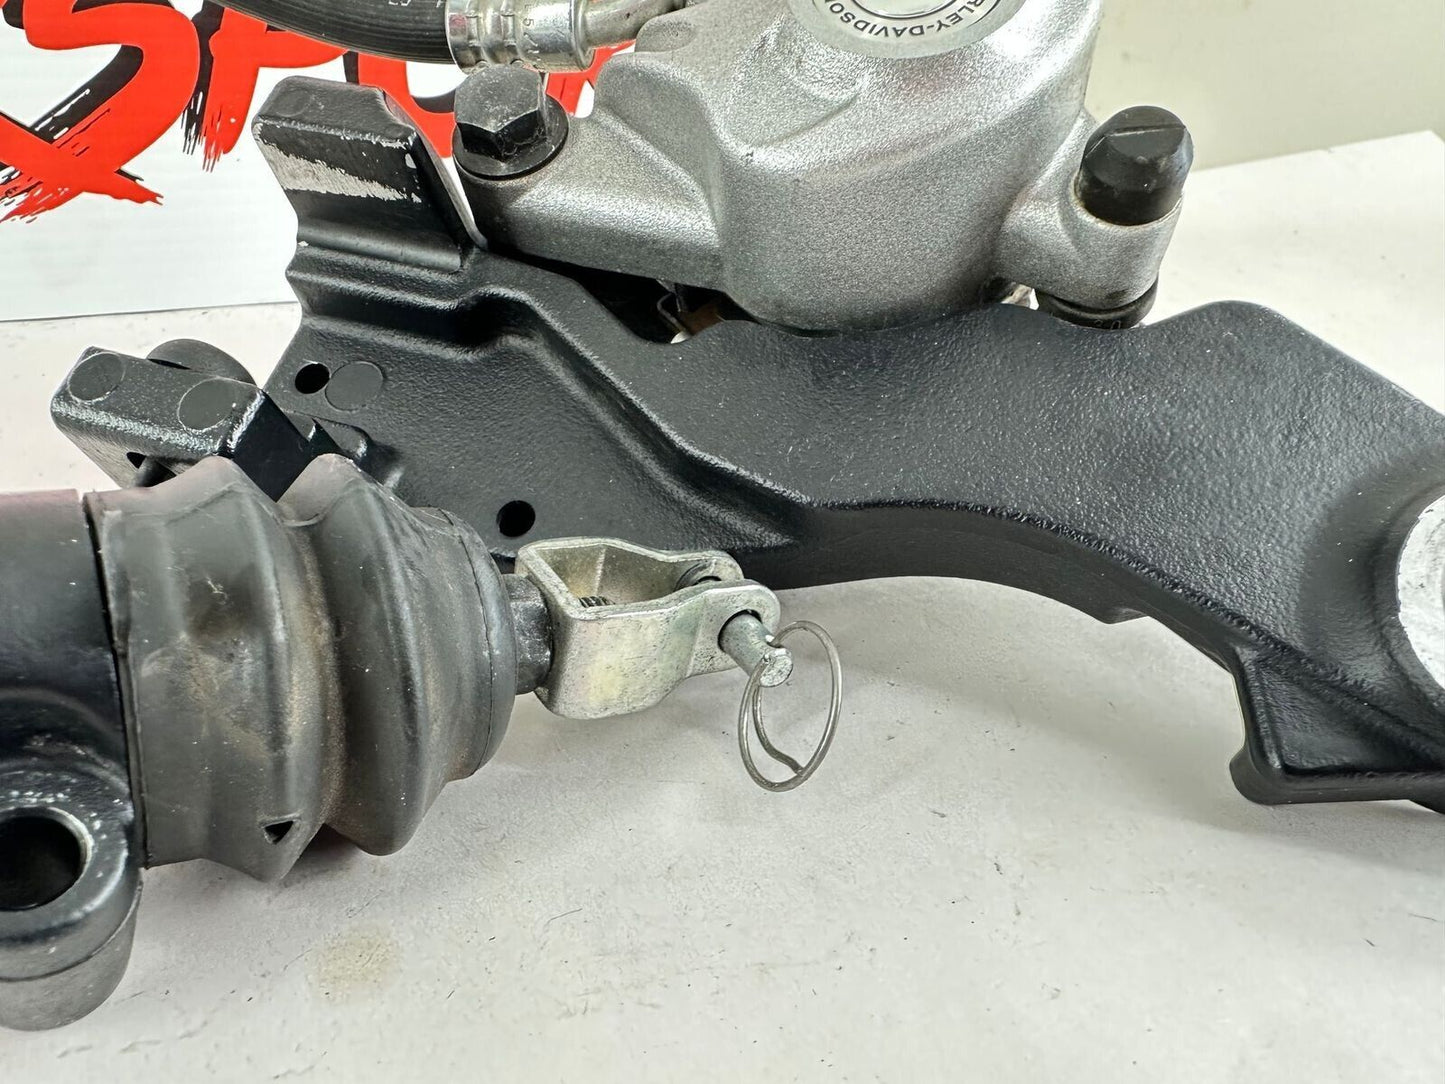 2012 HARLEY SPORTSTER CUSTOM Rear Brake Caliper + Master Cylinder